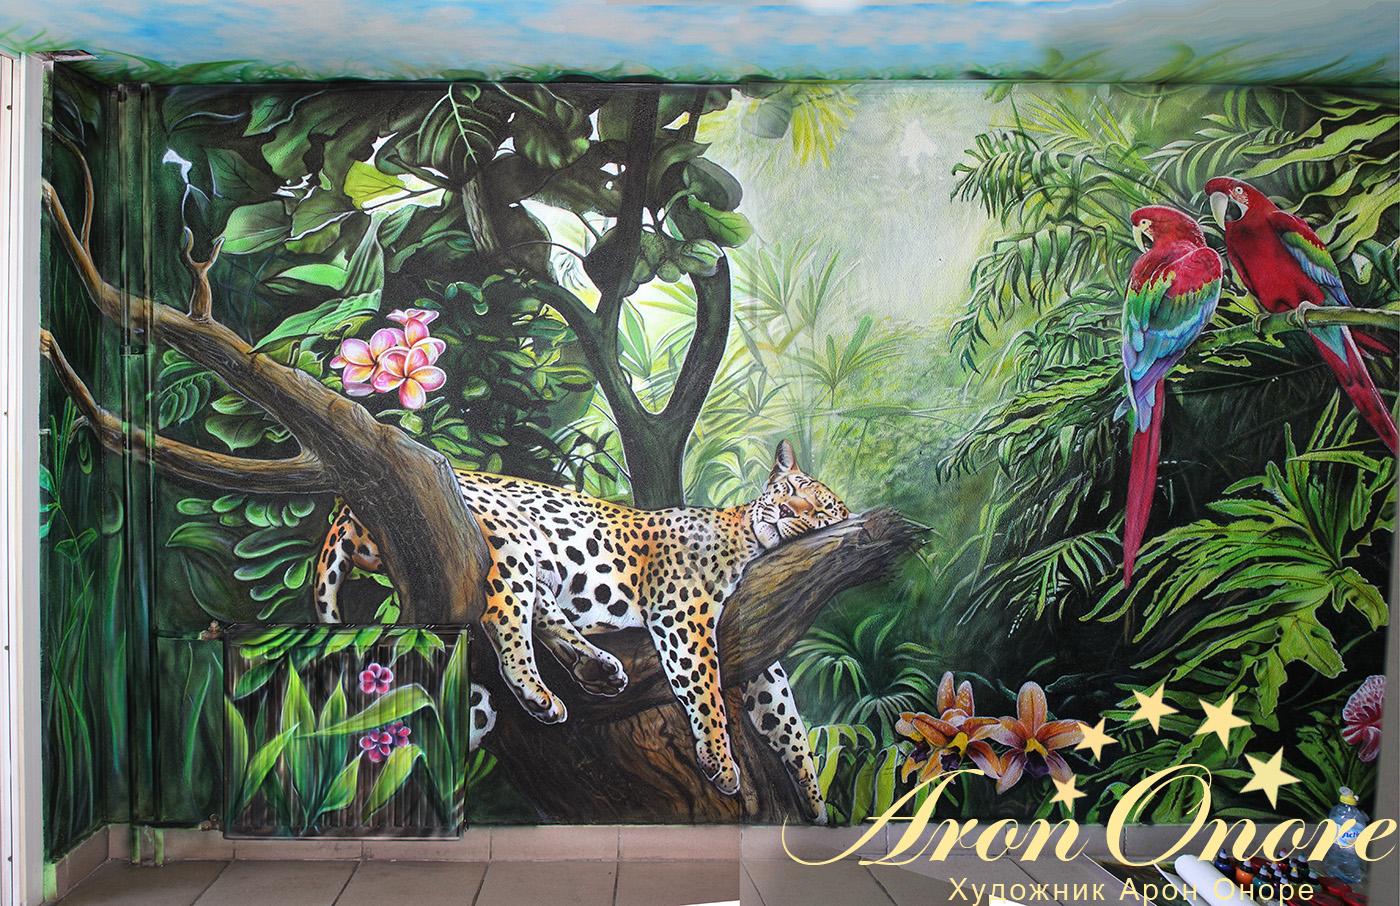 Готовый рисунок на стене в московском подъезде не тему – Джунгли (природа)